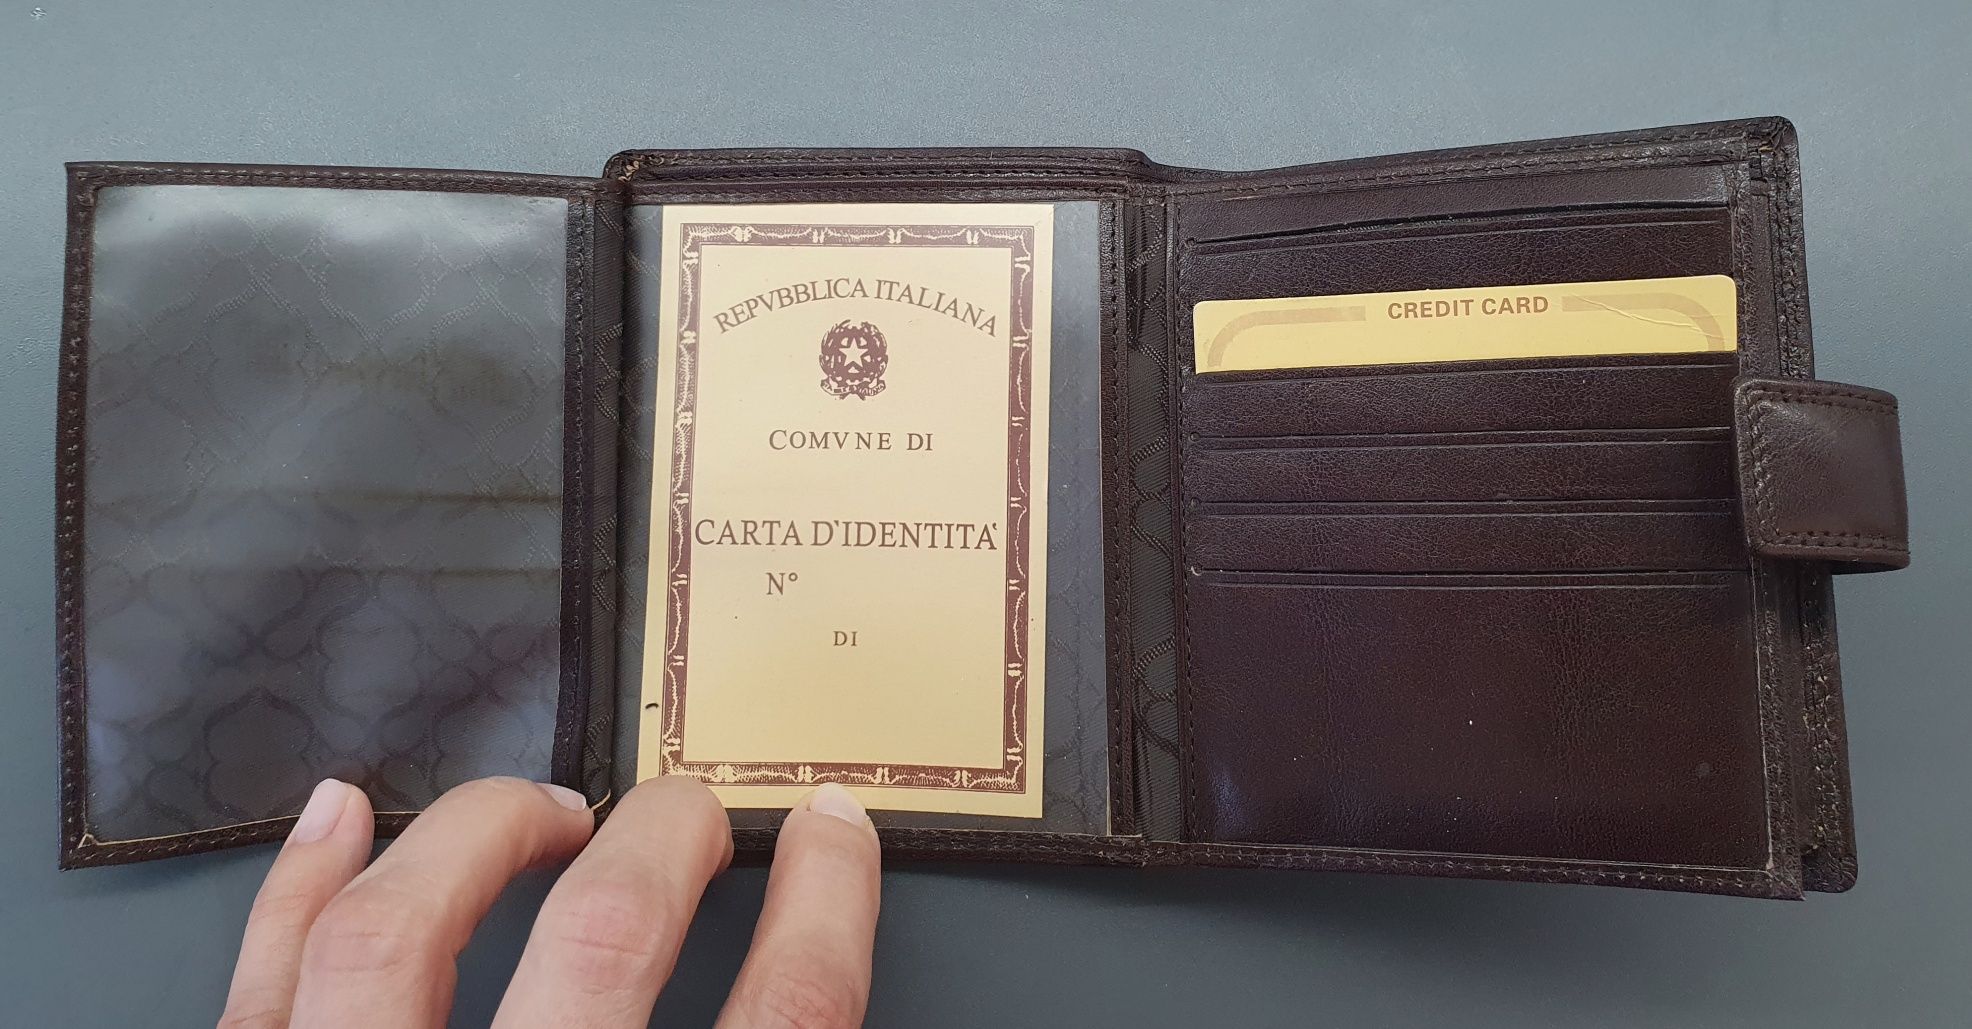 Nowy włoski męski brązowy portfel